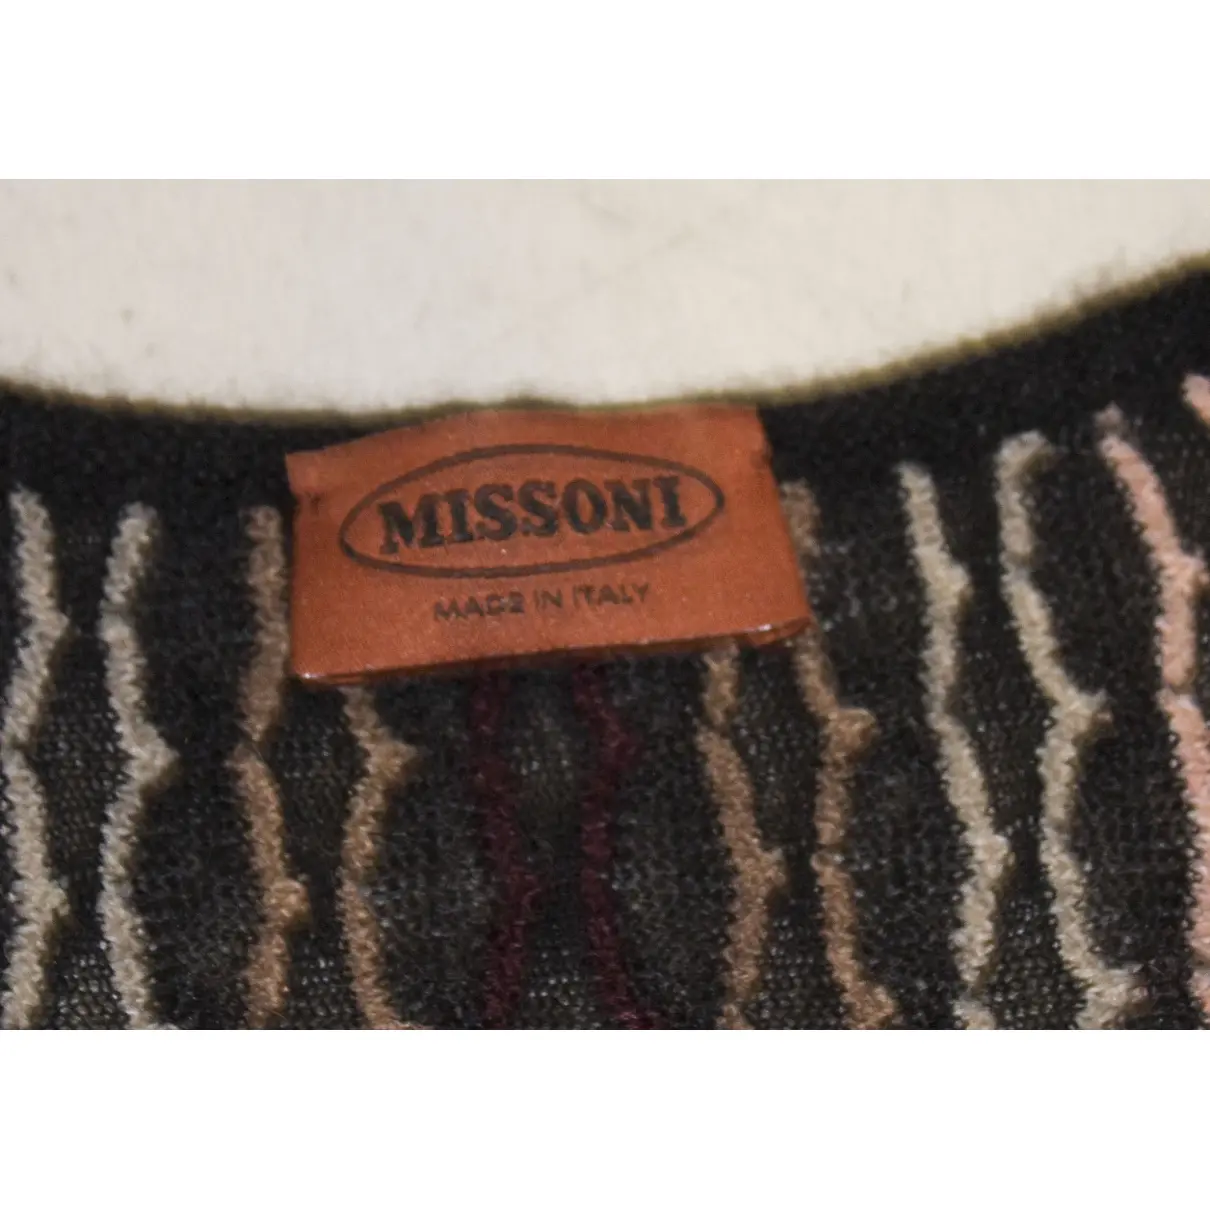 Buy Missoni Wool cardigan online